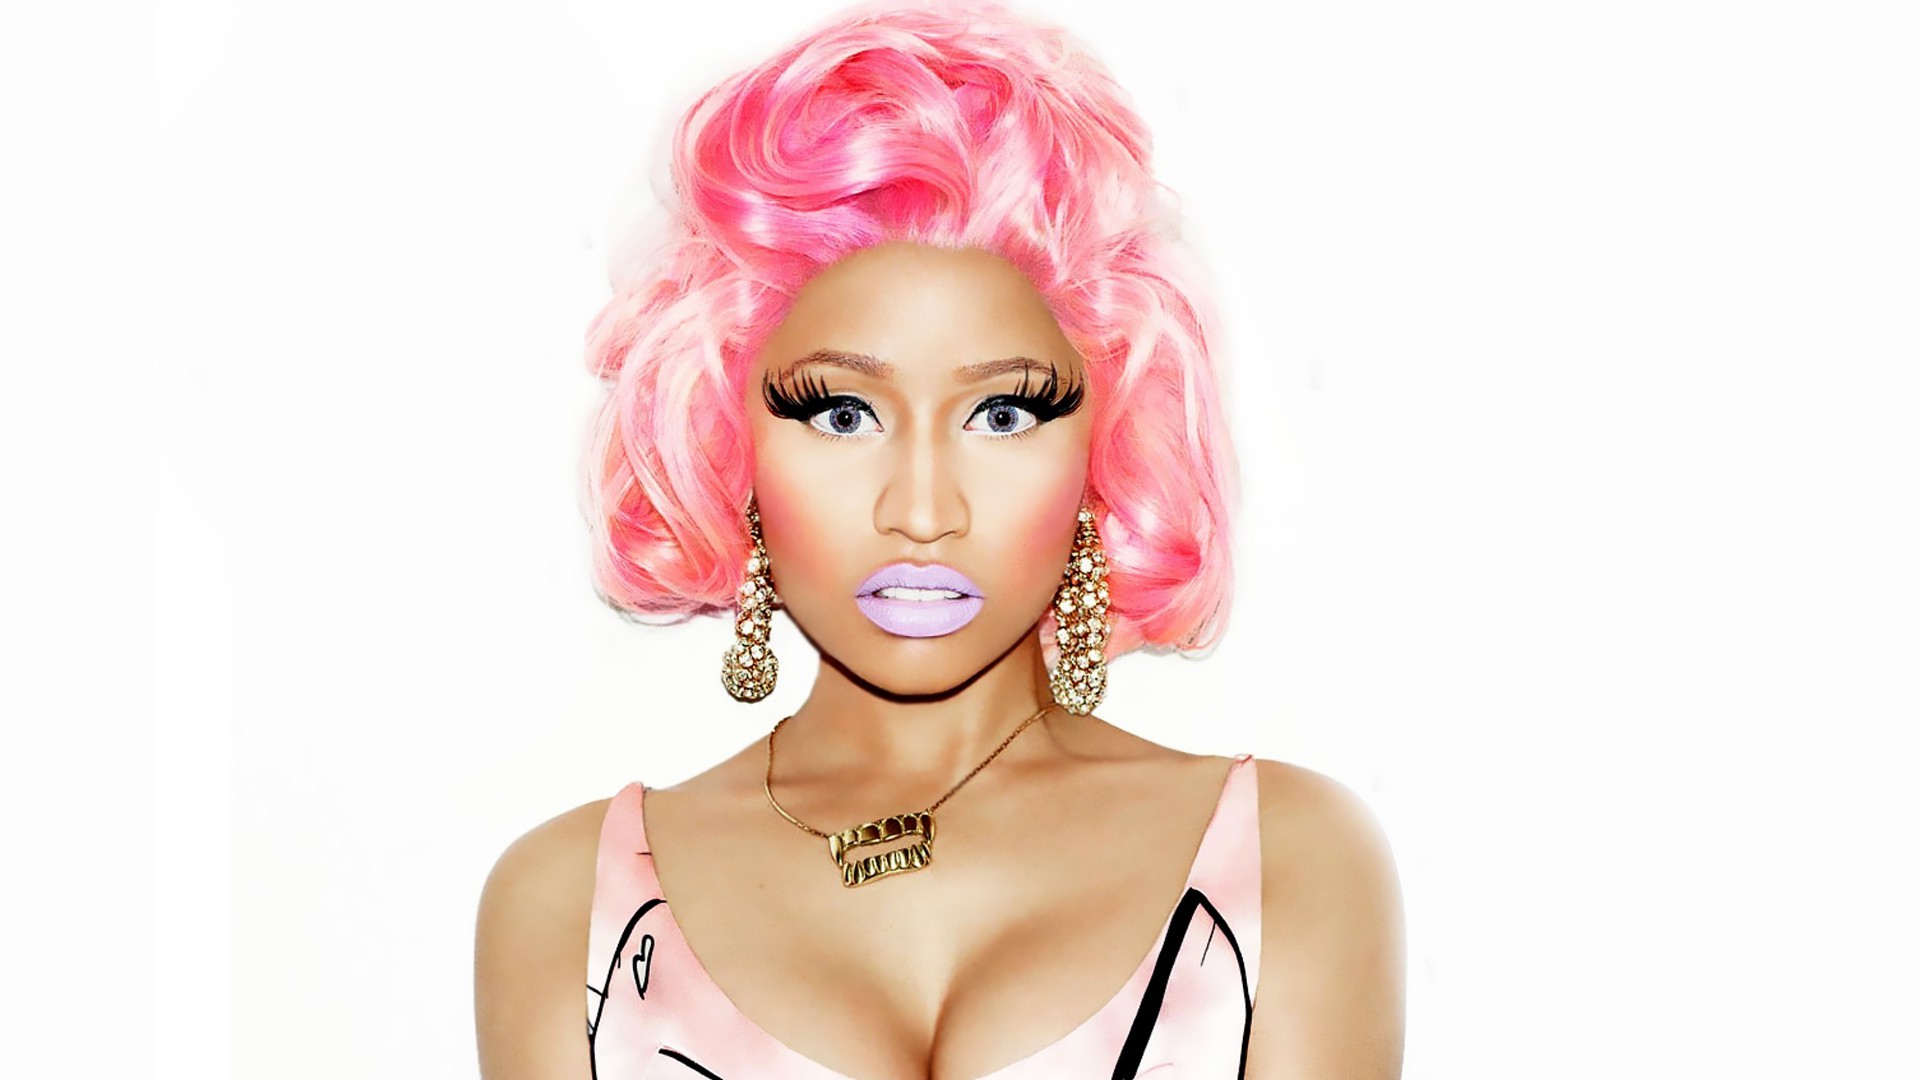 Nicki Minaj, Pink Hair, Singer, Curly Hair, Looking At Viewer, White Background, Jewelry Wallpaper